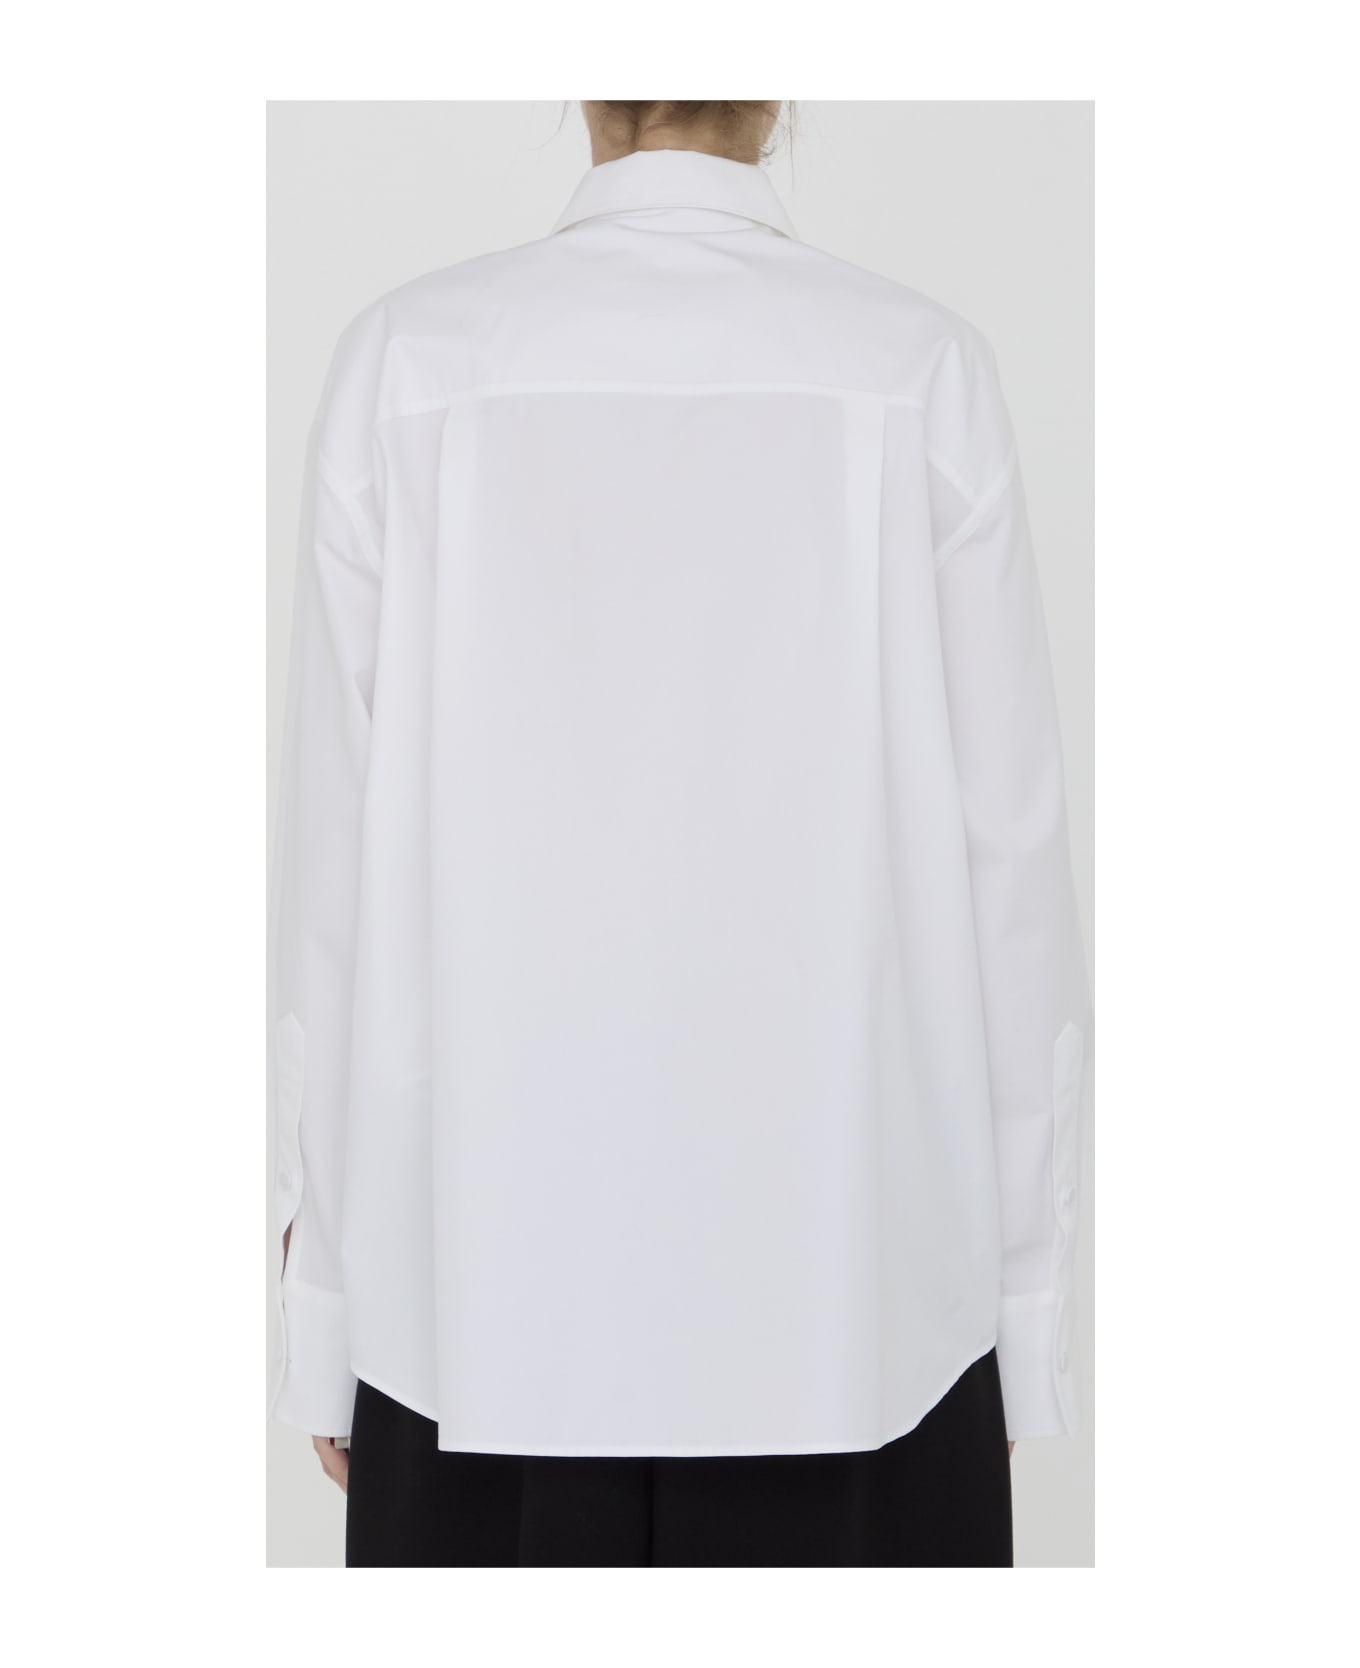 Valentino Garavani Compact Popeline Shirt - WHITE ブラウス